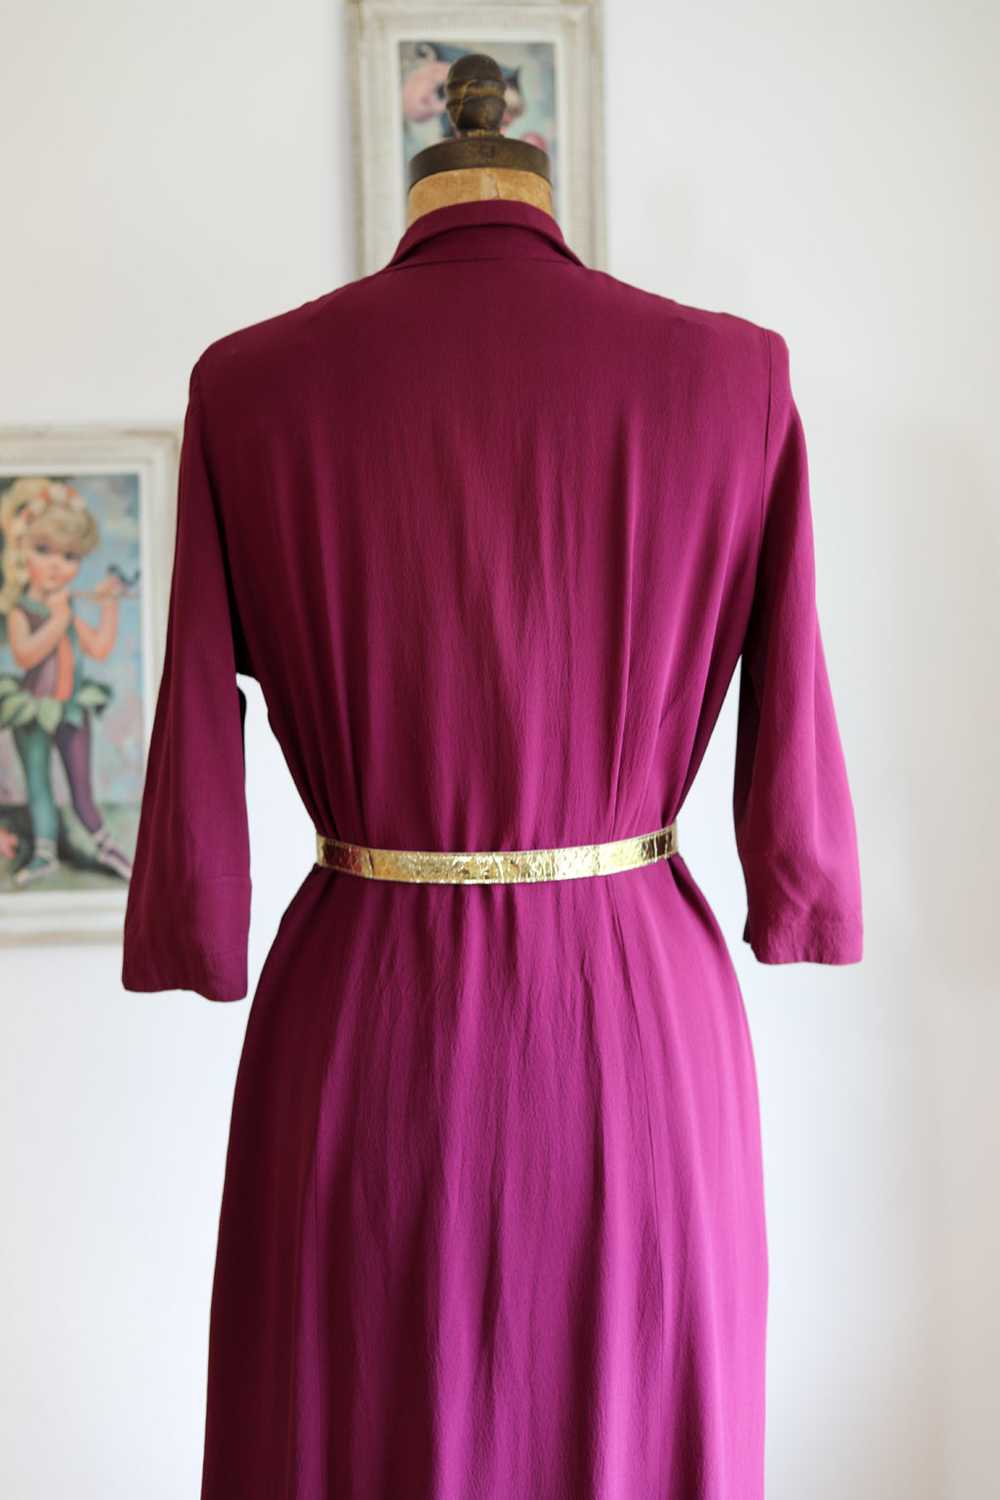 Vintage 1940s Dress - VOLUP Plum Crepe Beauty w L… - image 7